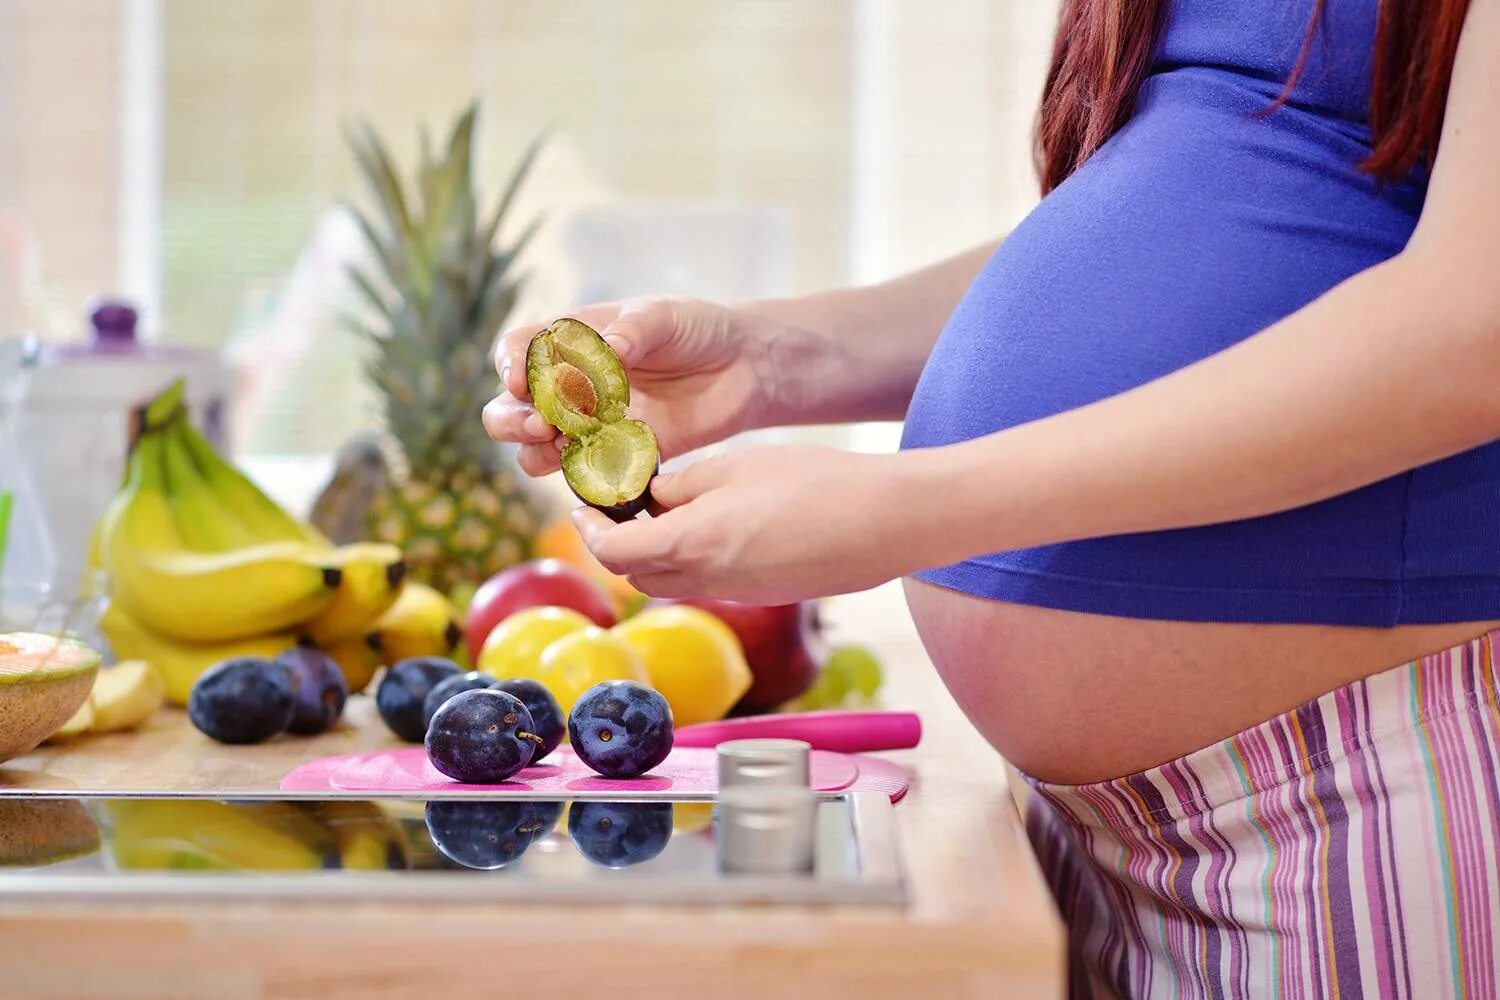 Продукты первый триместр. Питание для беременных. Беременность и еда.